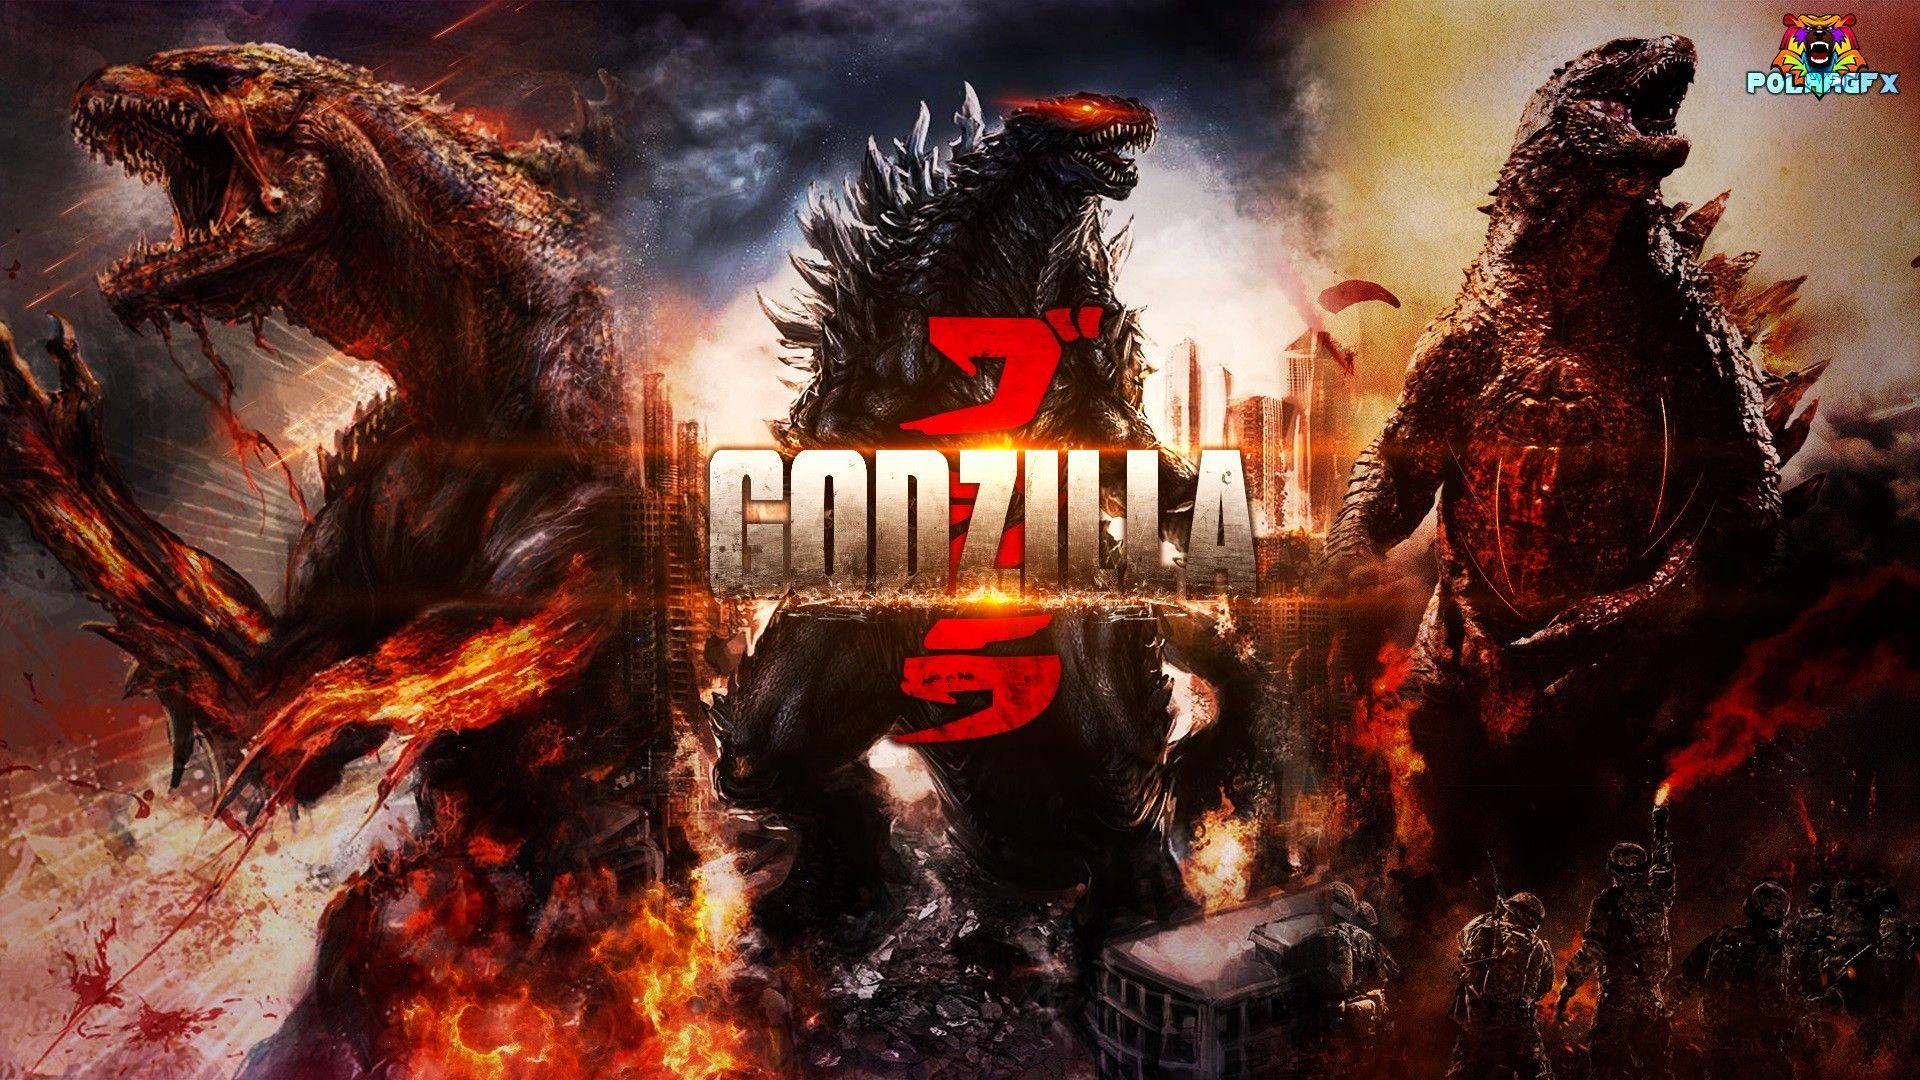 Godzilla 2019 Wallpapers - Top Free Godzilla 2019 ...